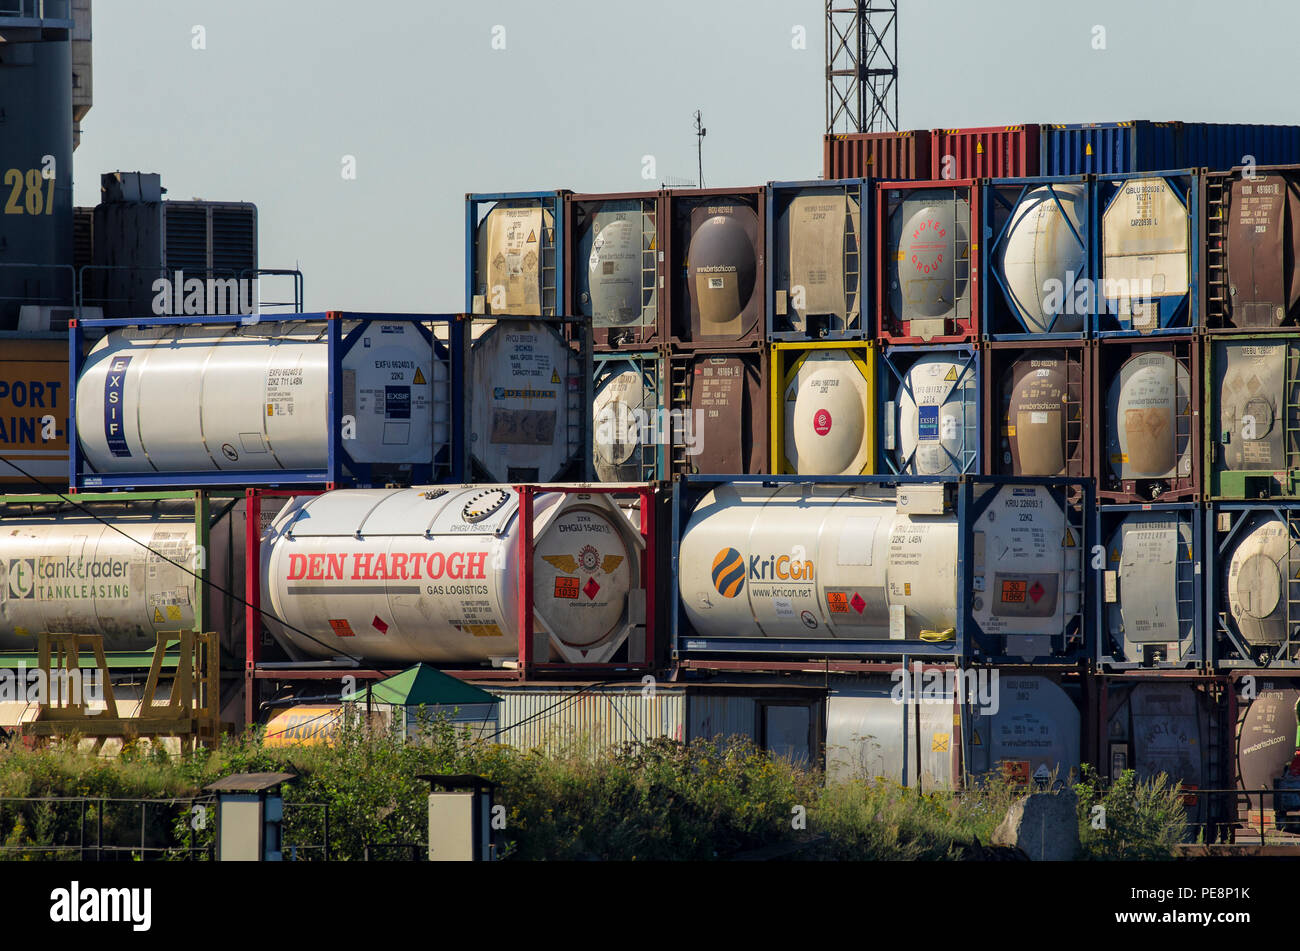 Saint-pétersbourg, Russie - Août 01, 2018 : les grands cylindres à gaz naturel liquéfié marqués avec des marques de transporteurs maritimes Banque D'Images